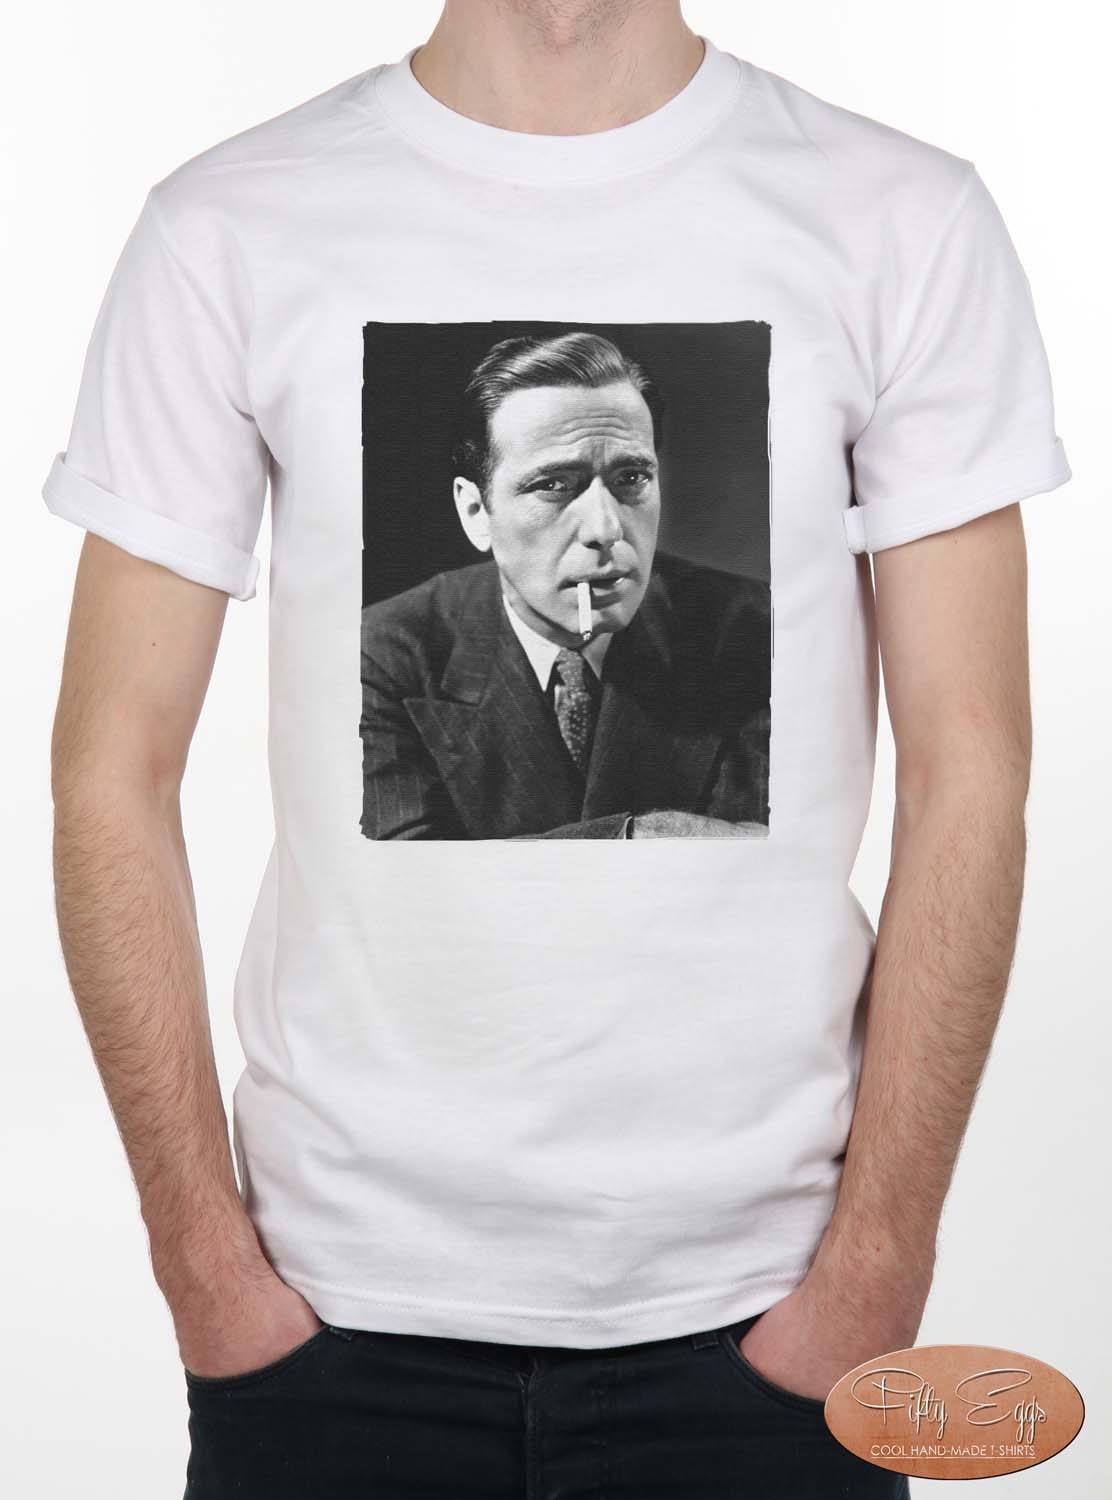 Items similar to Humphrey Bogart Iconic White T-Shirt on Etsy